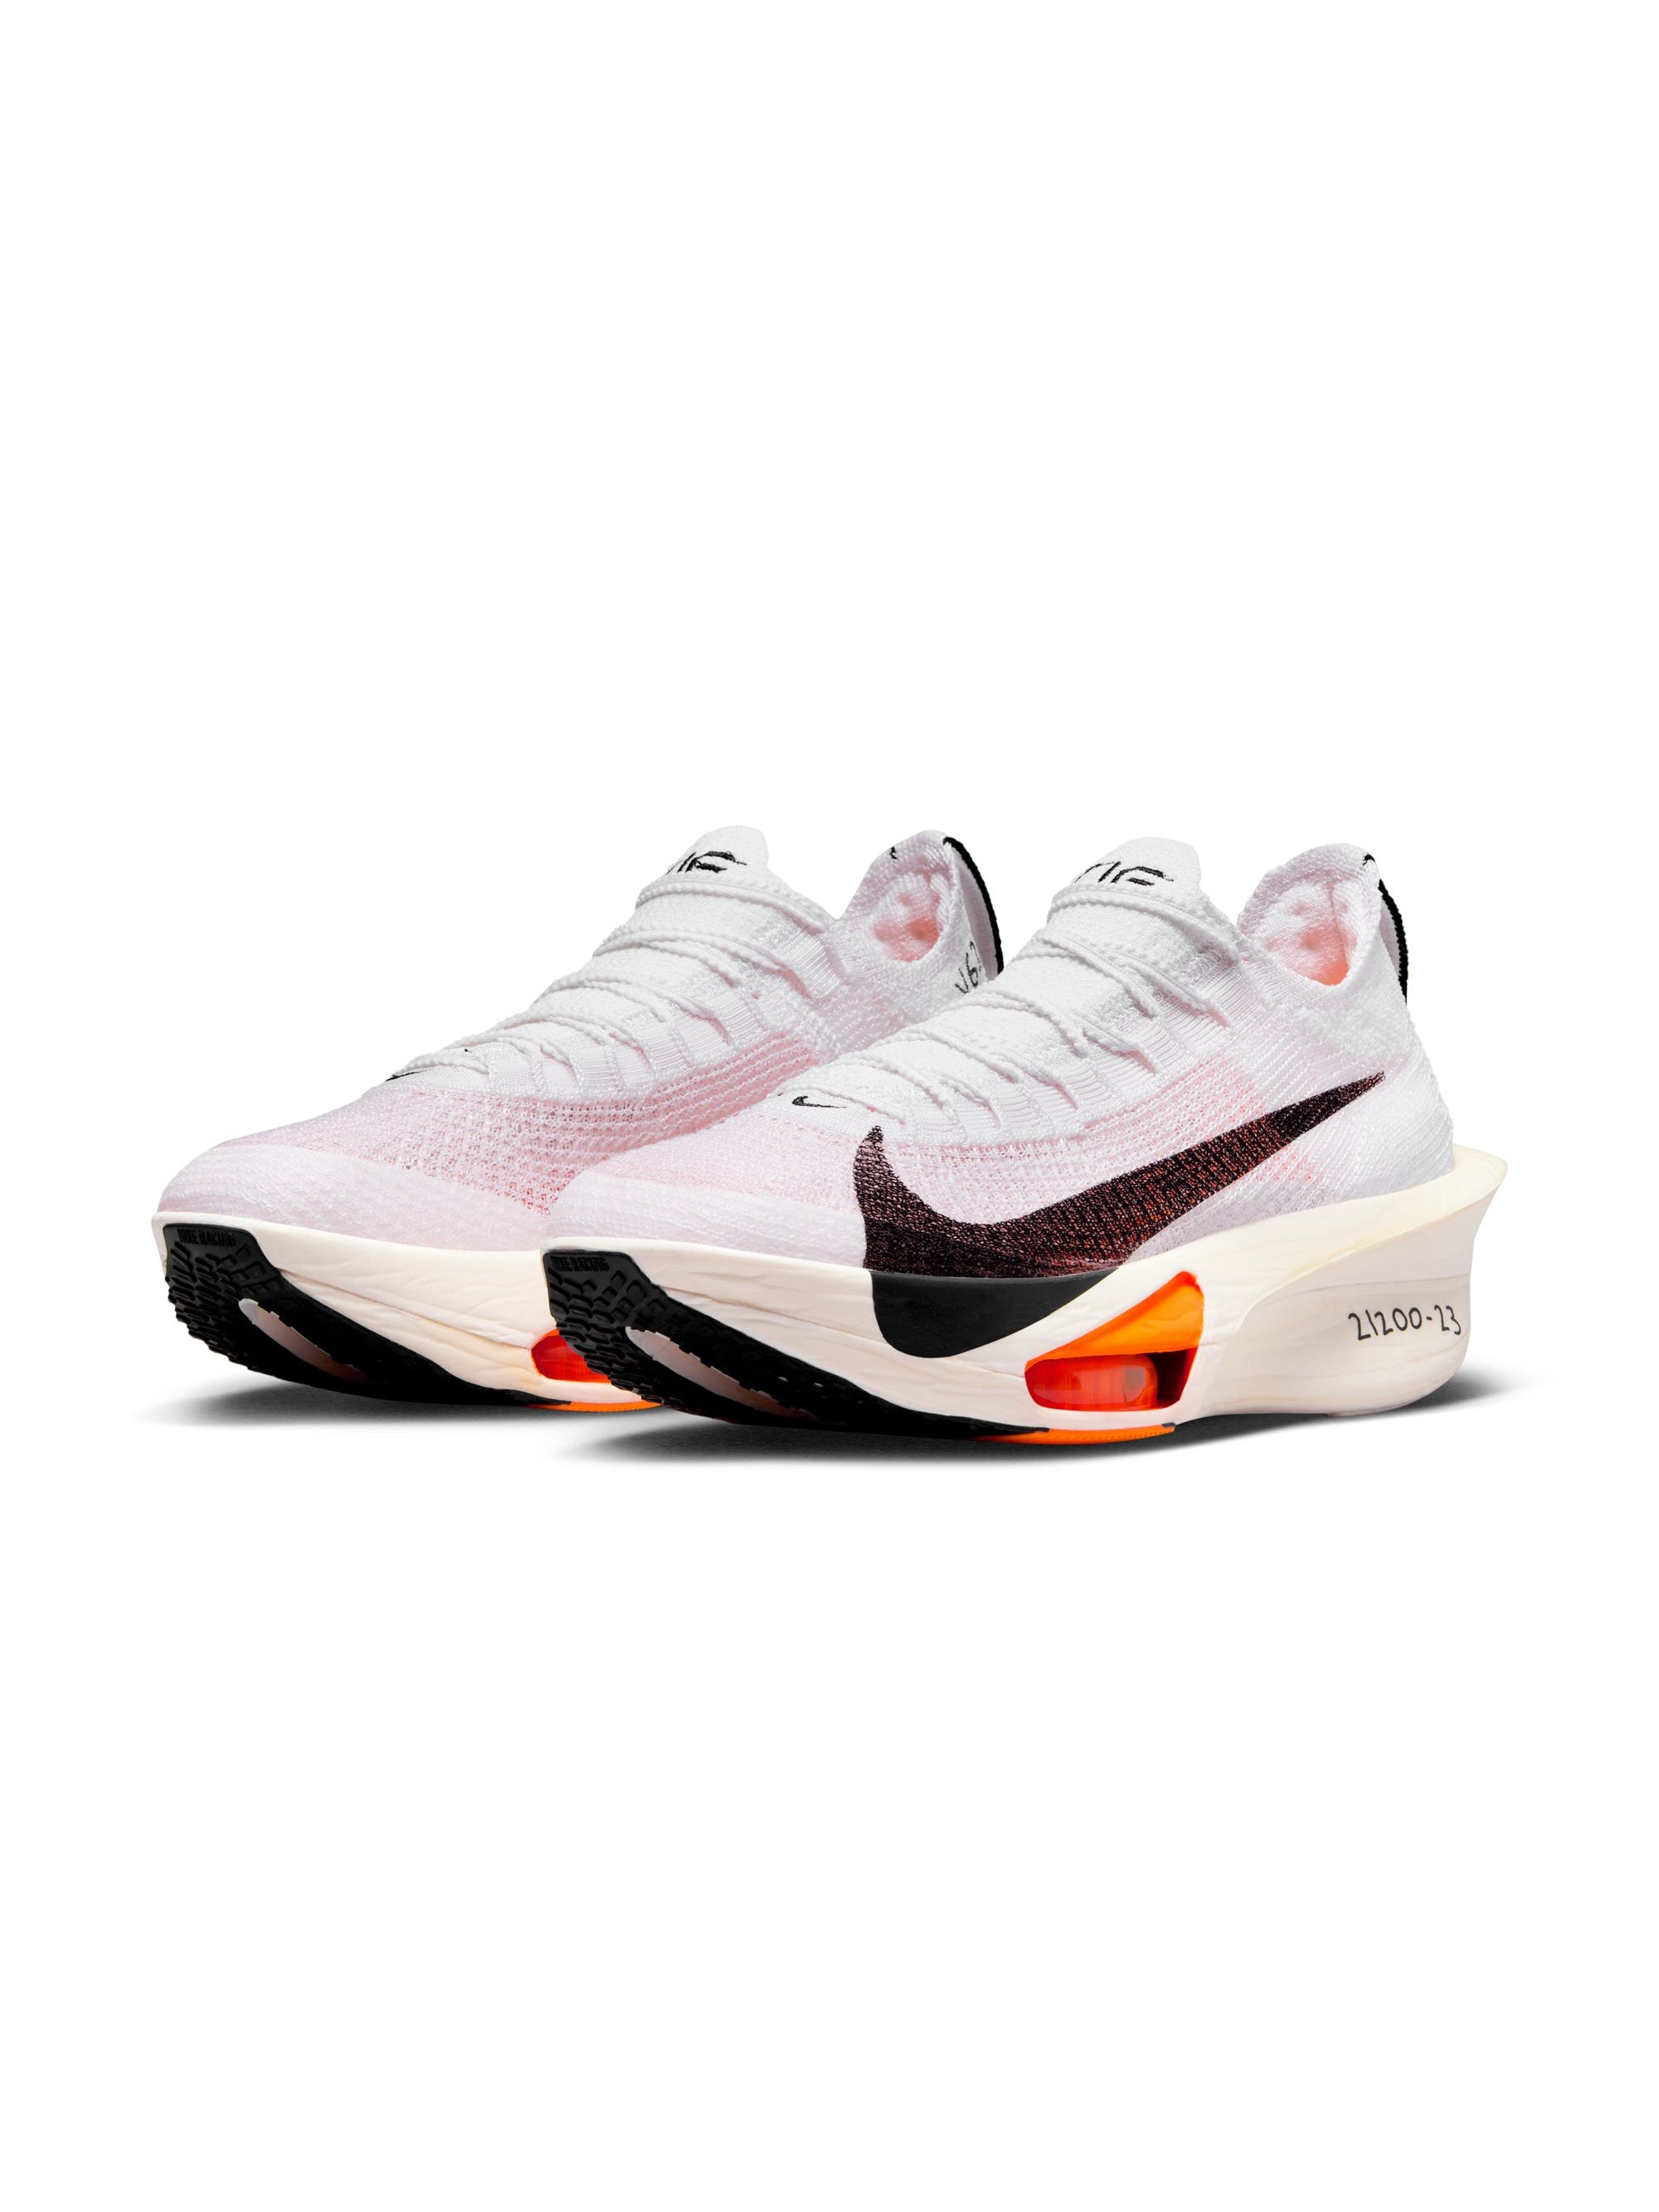 Nike Air Zoom Alphafly NEXT% 3 Proto Women's Shoes – Heartbreak 